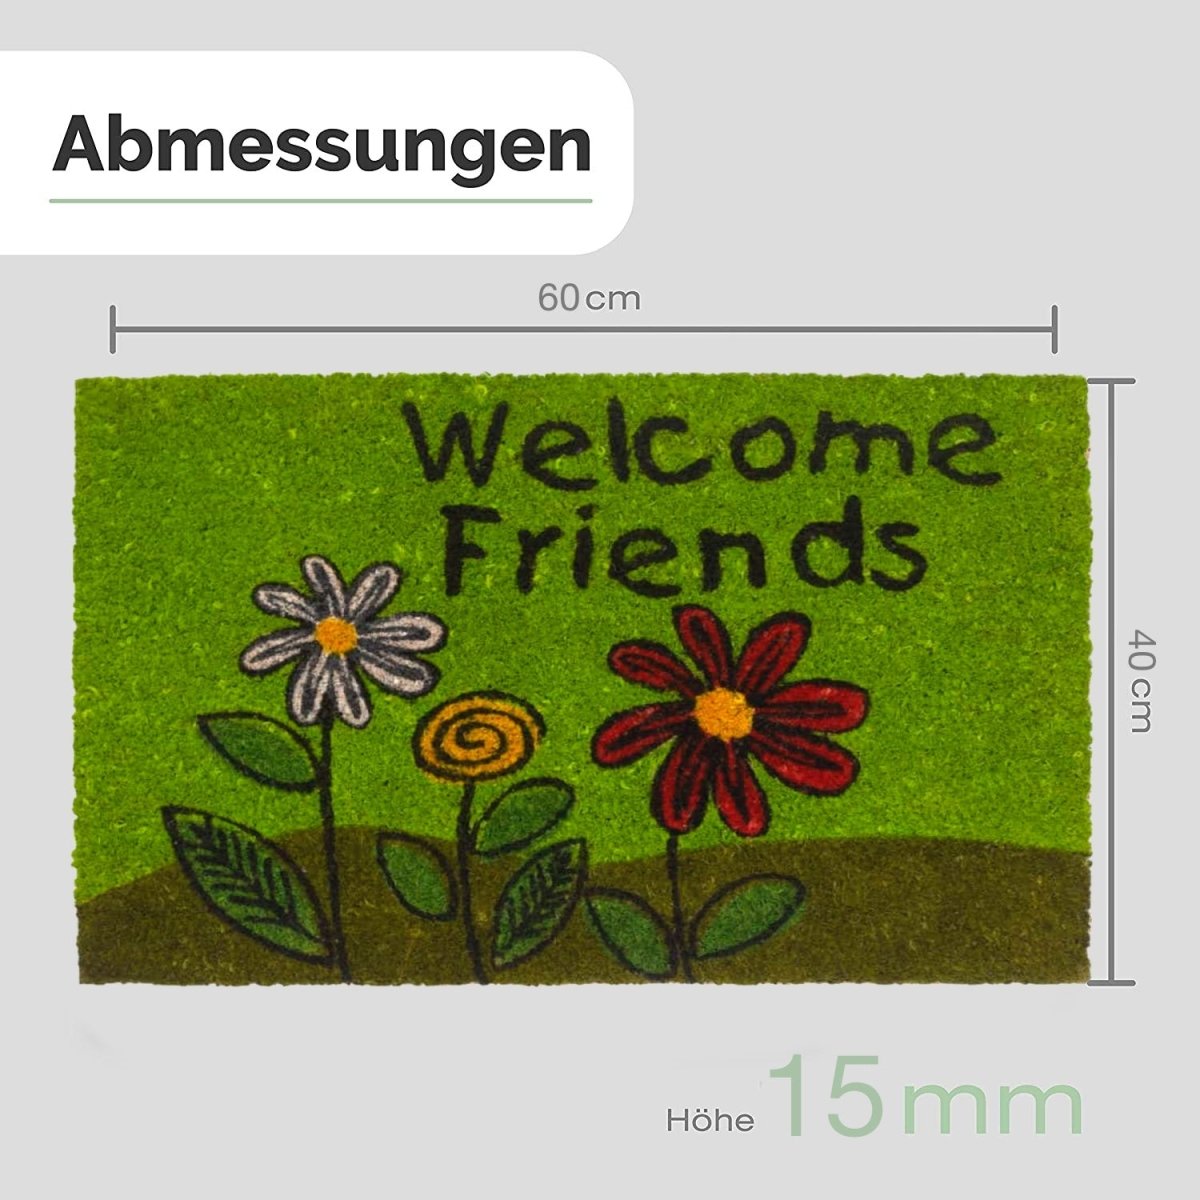 Fußmatte aus Kokos mit Blumen Motiv & Welcome Friends Aufschrift - Entrando